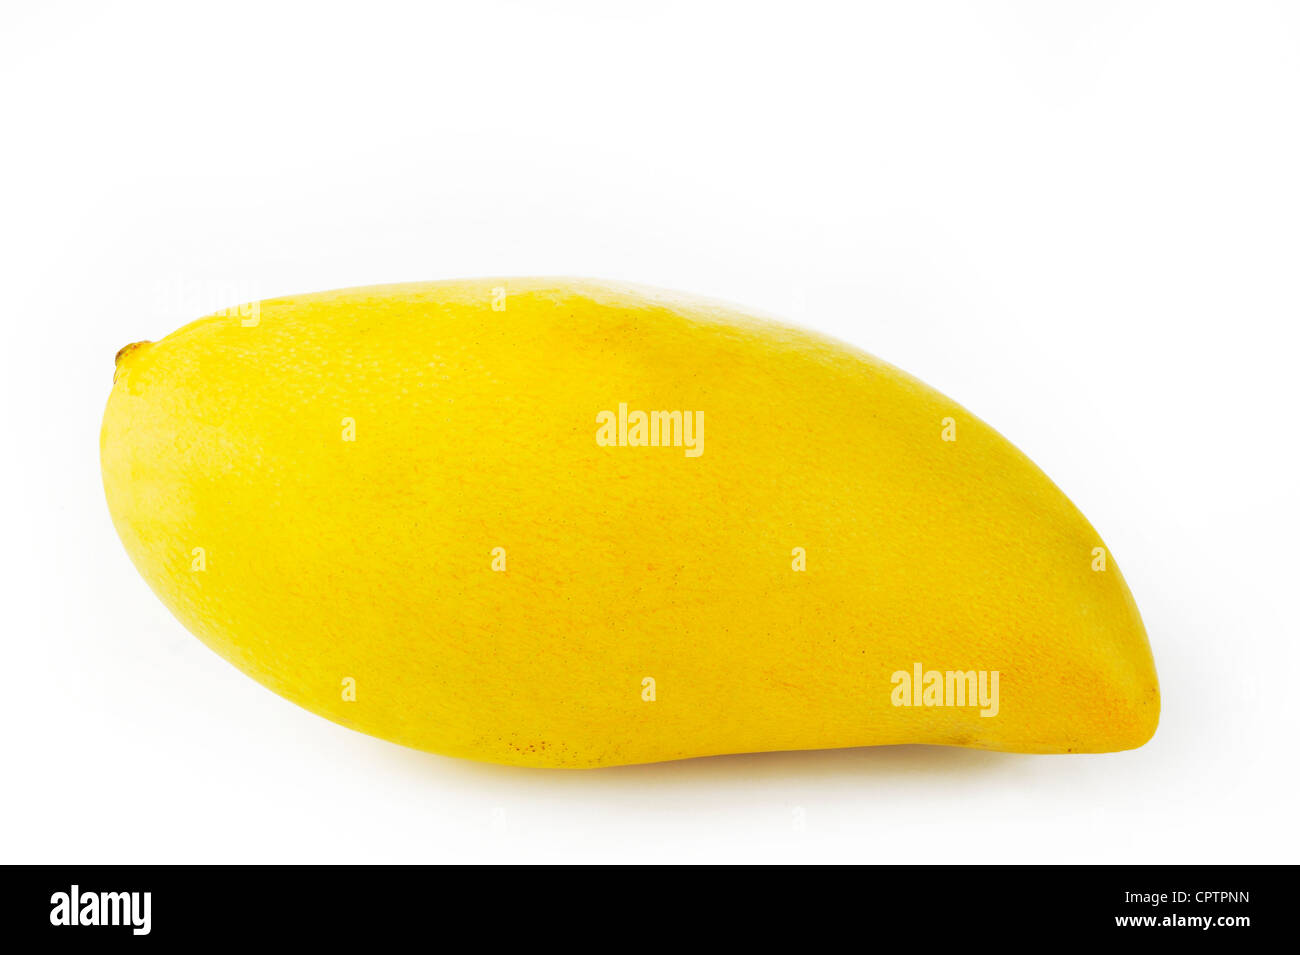 ripe mango on white background Stock Photo